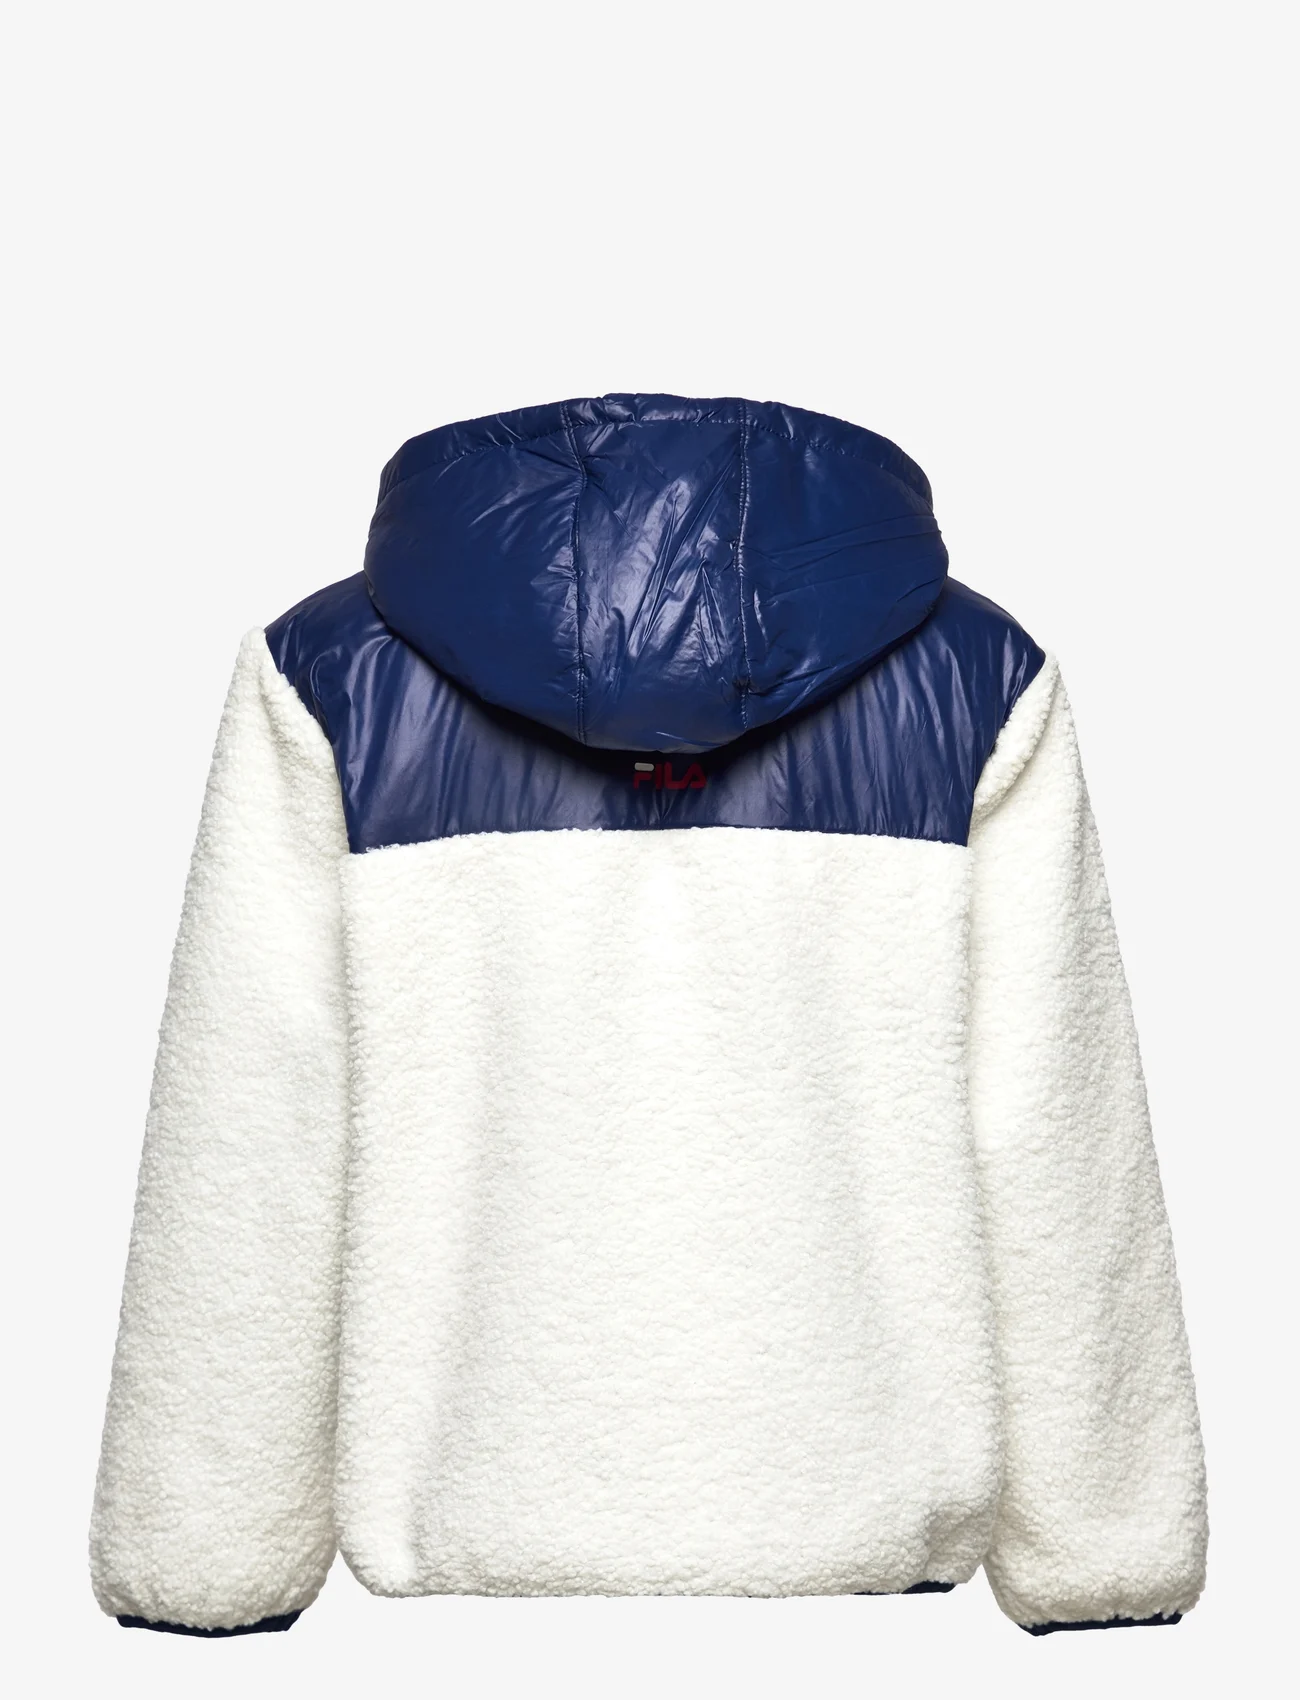 FILA - BORDEAUX sherpa jacket - fleece-jakke - egret-medieval blue - 1